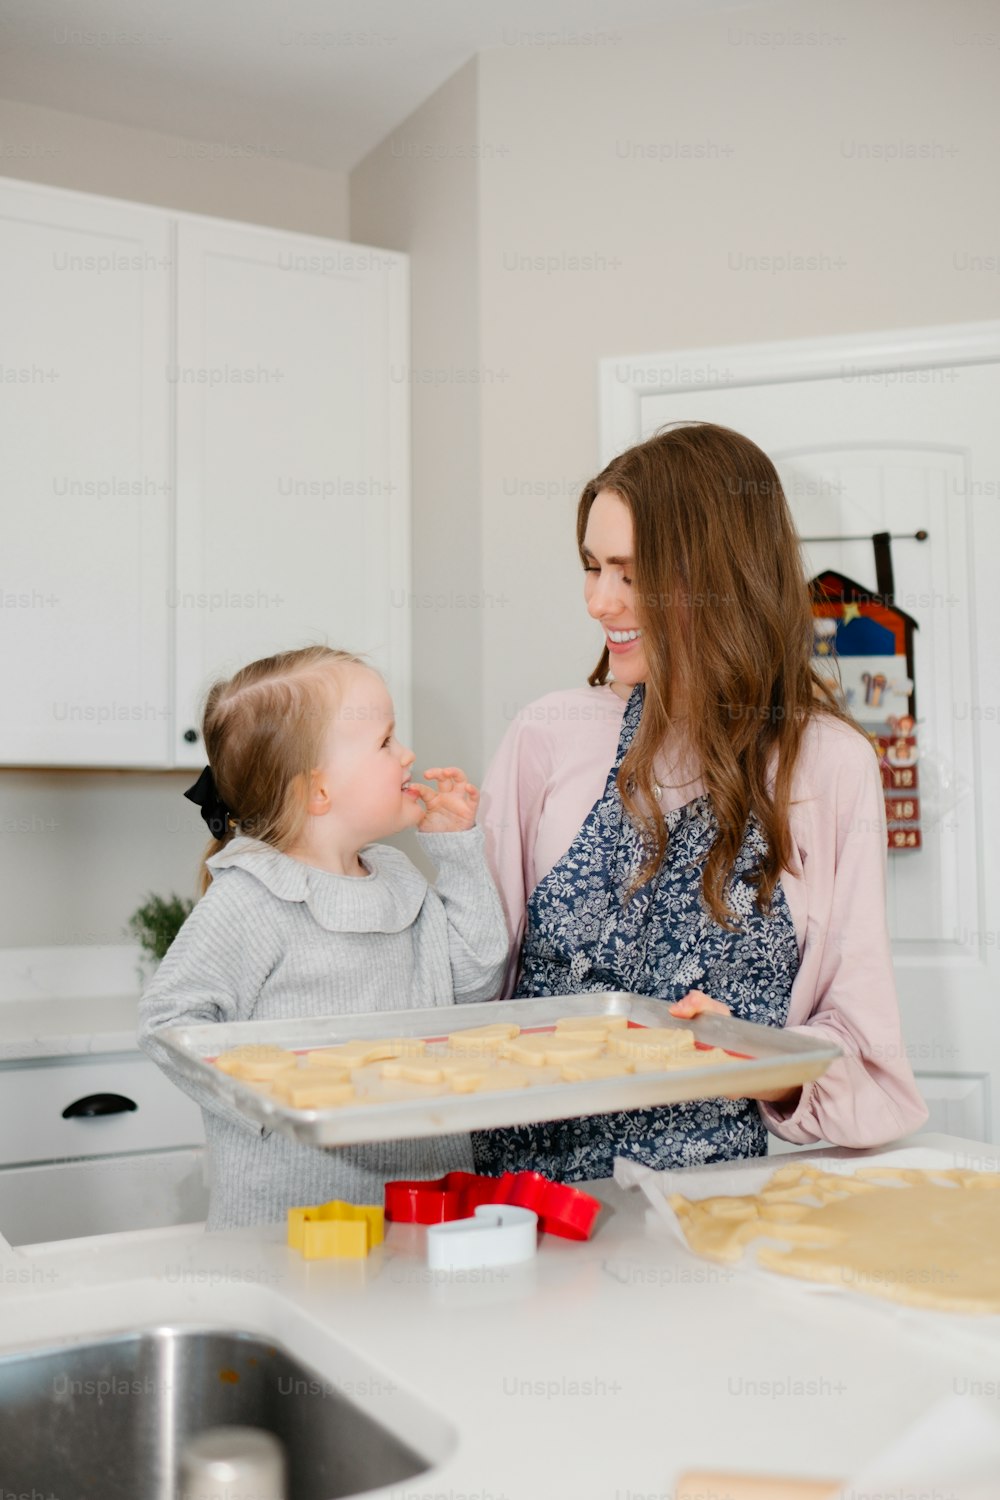 Una mujer sosteniendo una bandeja de galletas junto a una niña